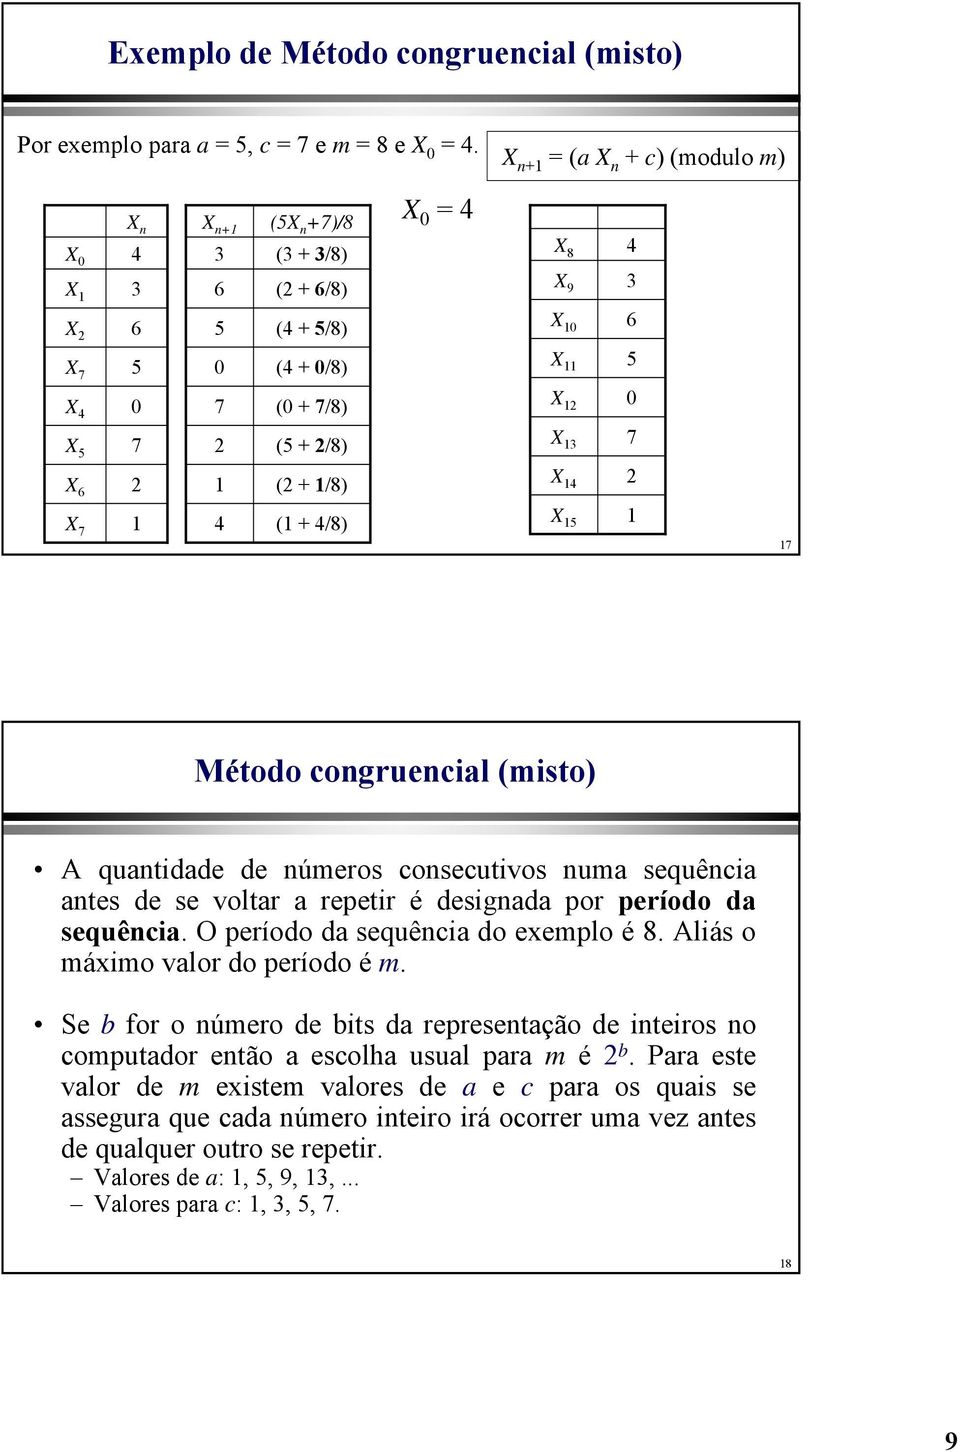 2 X 3 X 4 X 5 4 3 6 5 7 2 7 Método congruencial (misto) A quantidade de números consecutivos numa sequência antes de se voltar a repetir é designada por período da sequência.